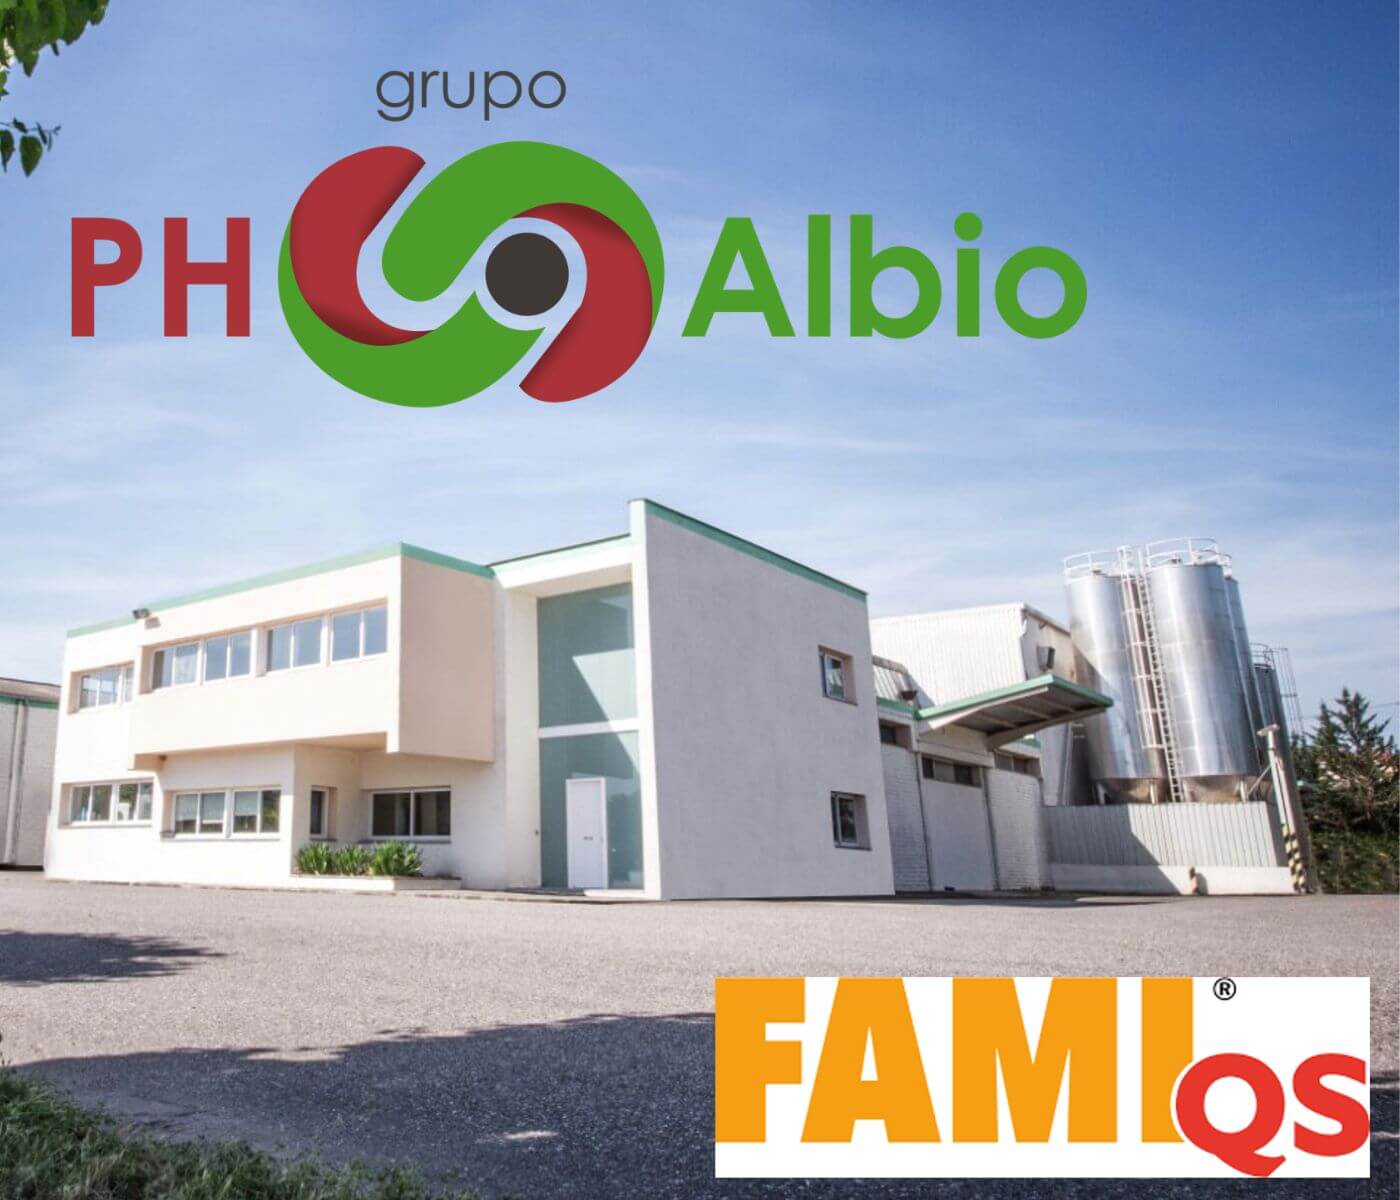 Grupo PH-Albio obtiene certificación FAMI QS para su nueva planta...